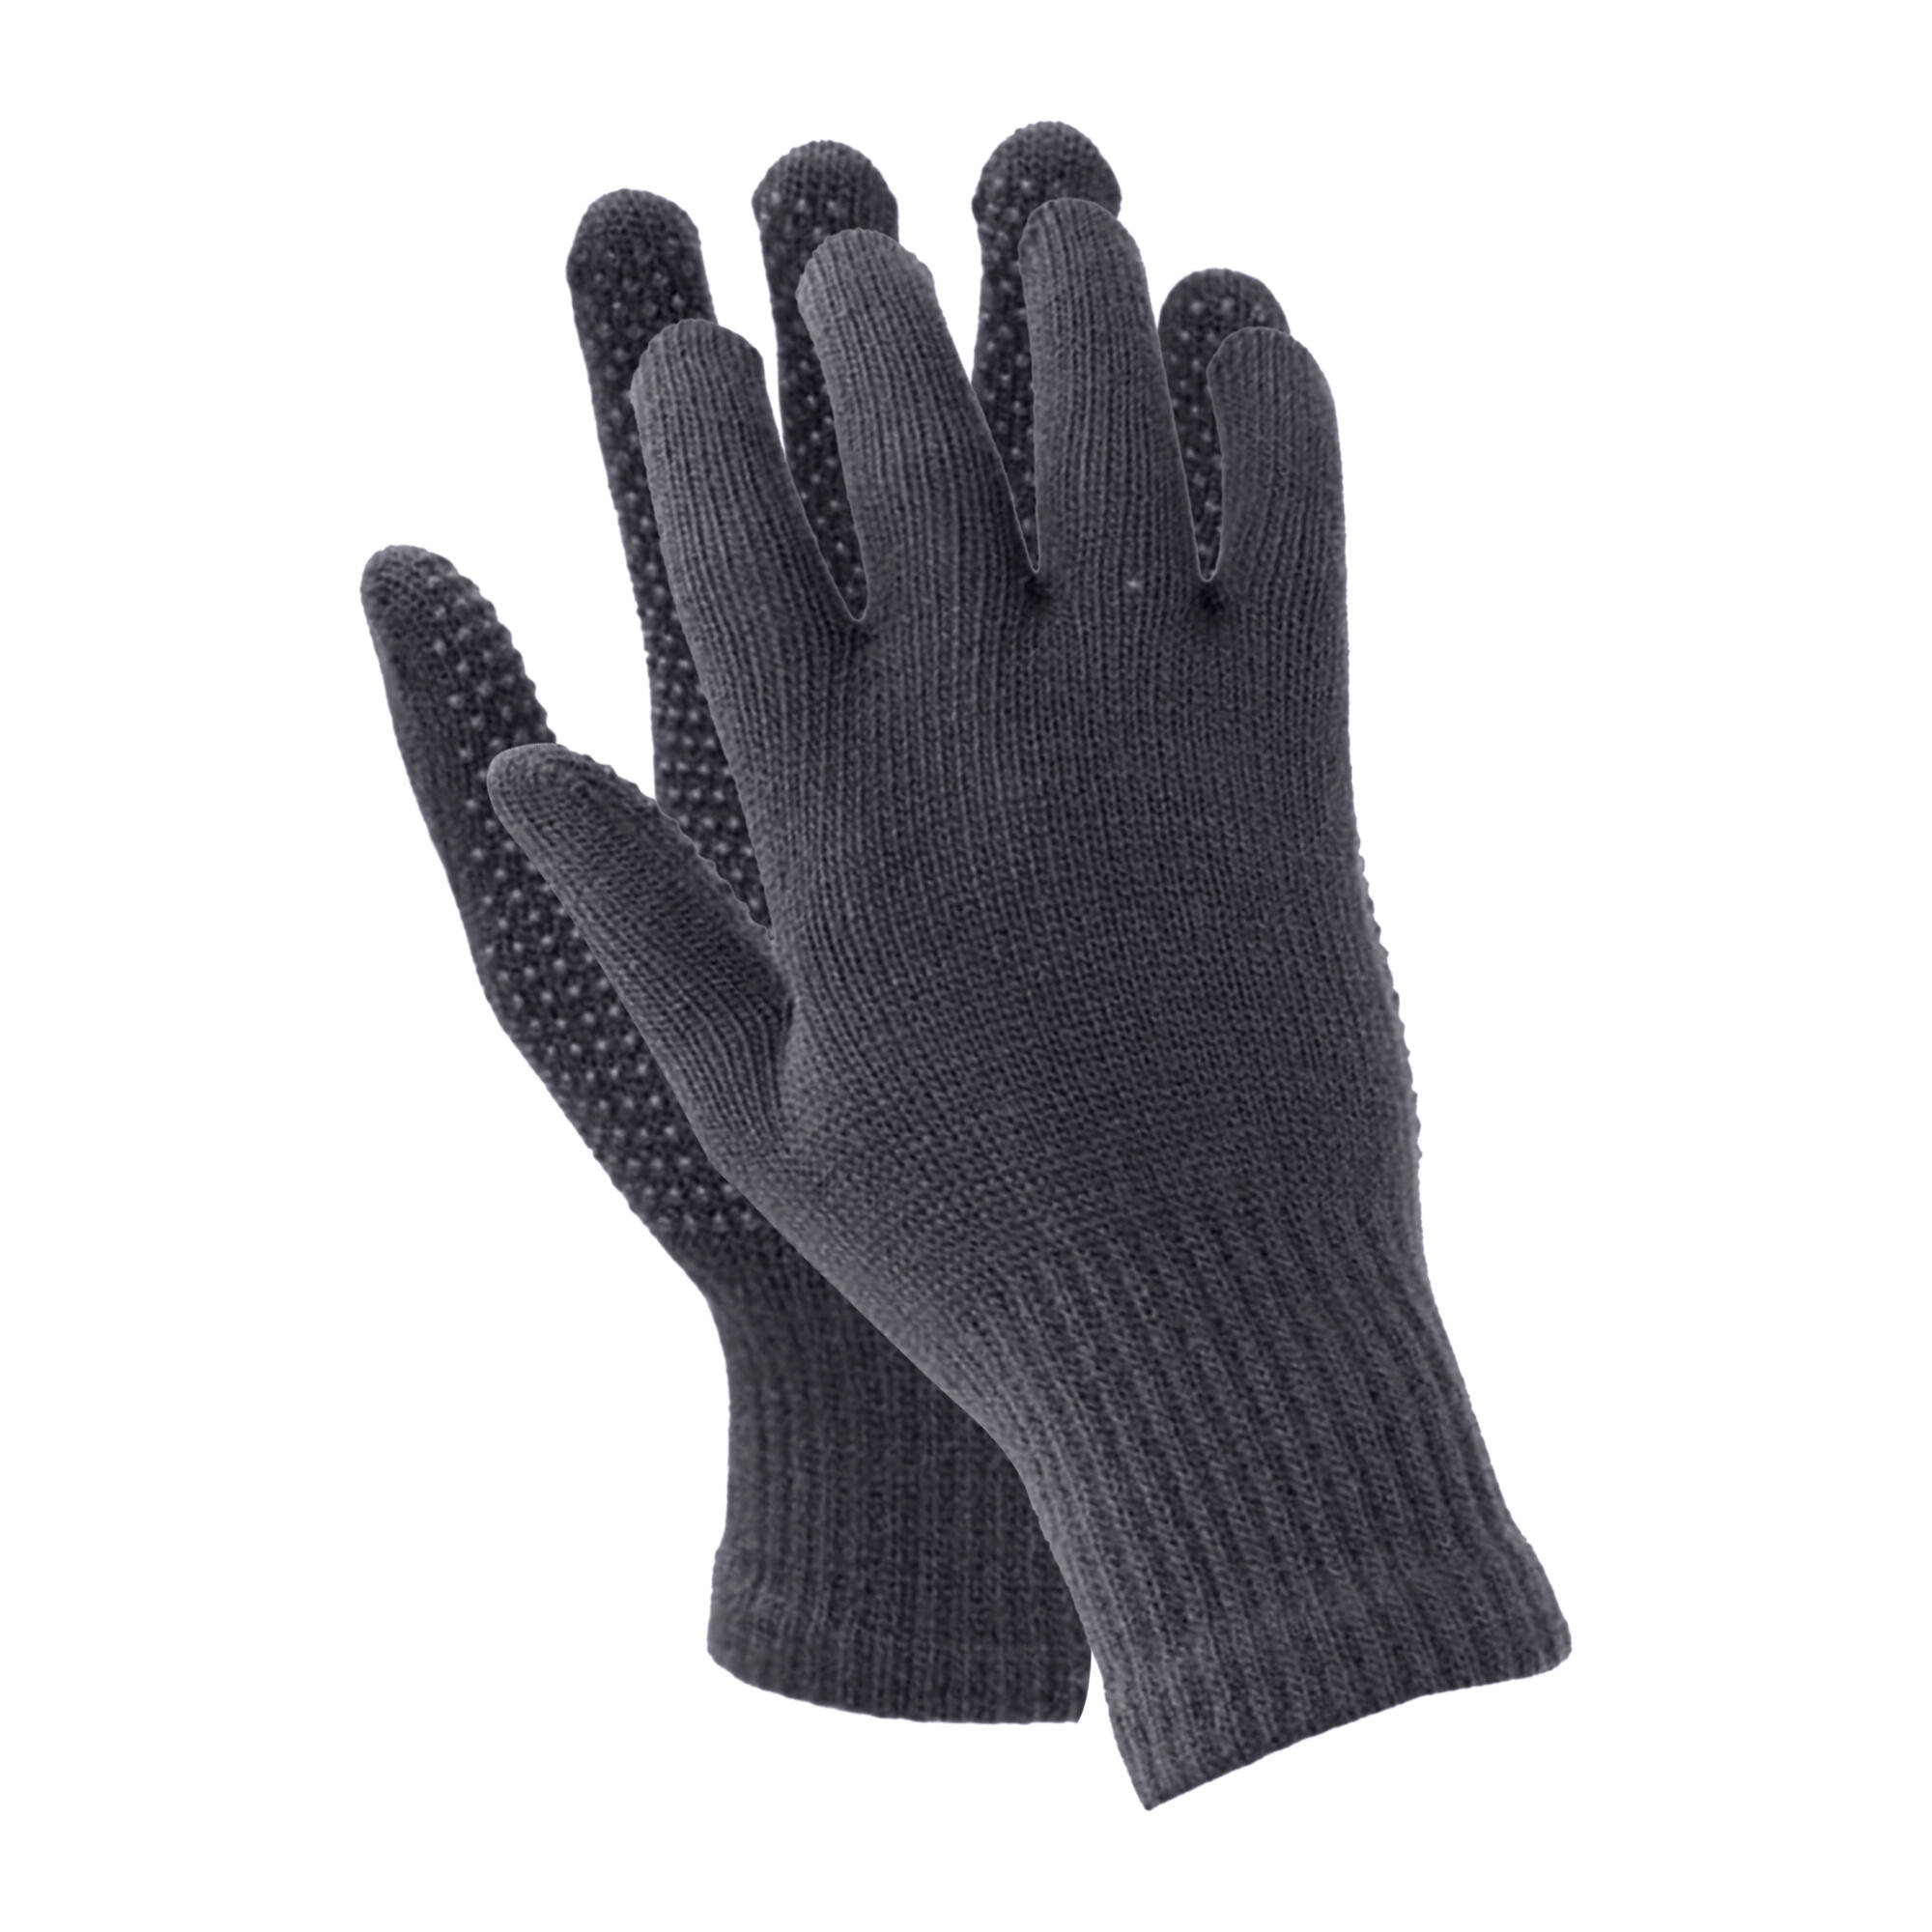 Childrens/Kids Suregrip Riding Gloves (Black) 2/3